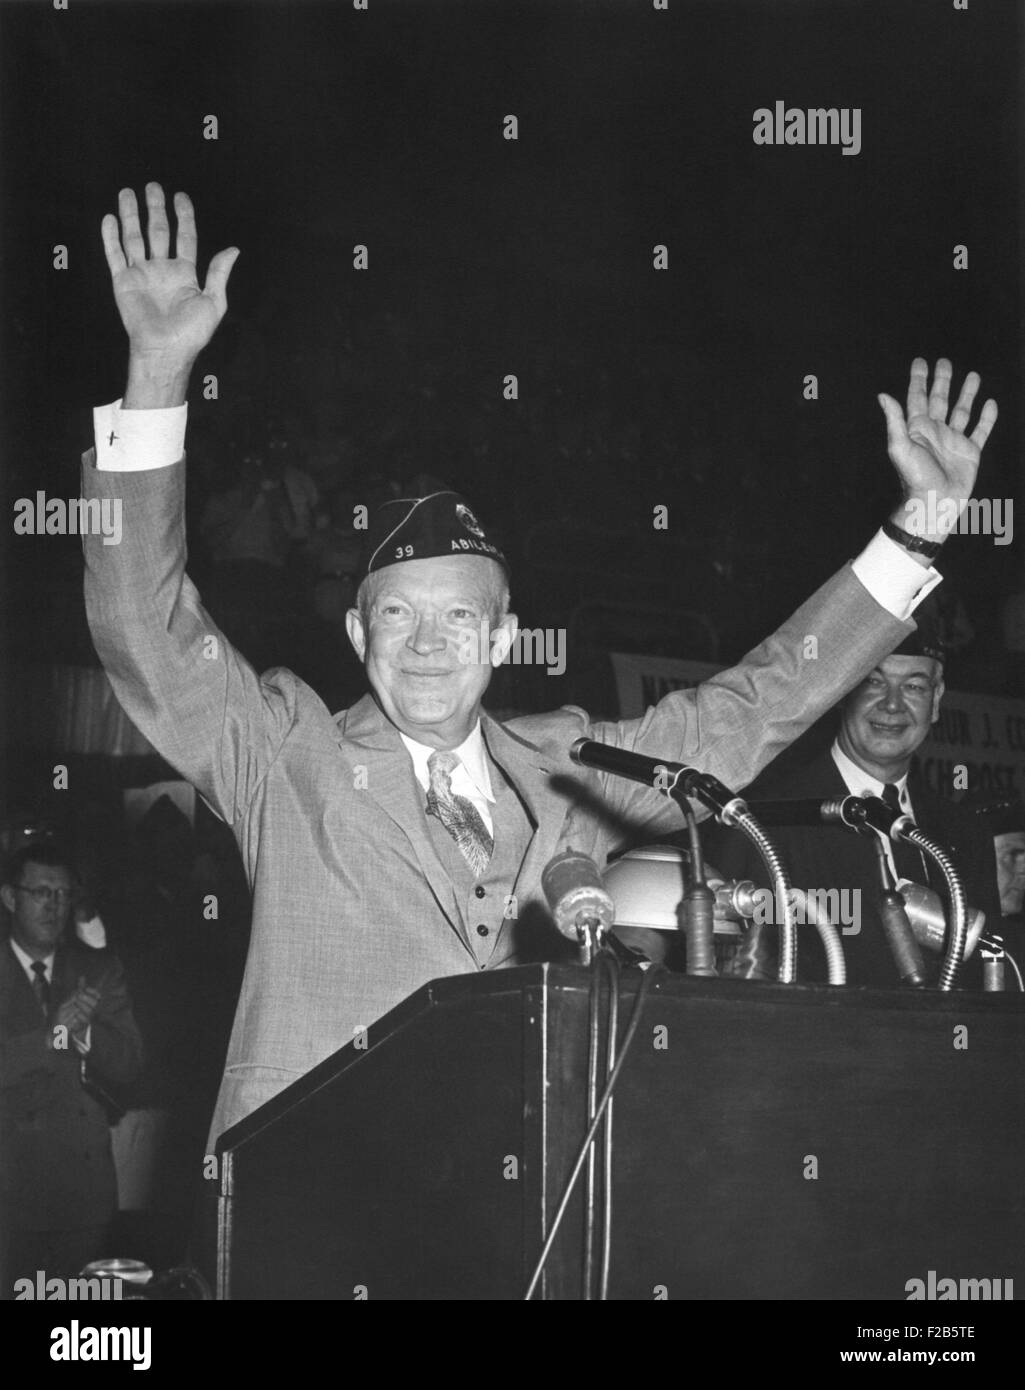 Le président Eisenhower signe à l'occasion du congrès annuel de la Légion du Nord. Le 29 août 1954. National Guard Armory, Washington, Banque D'Images